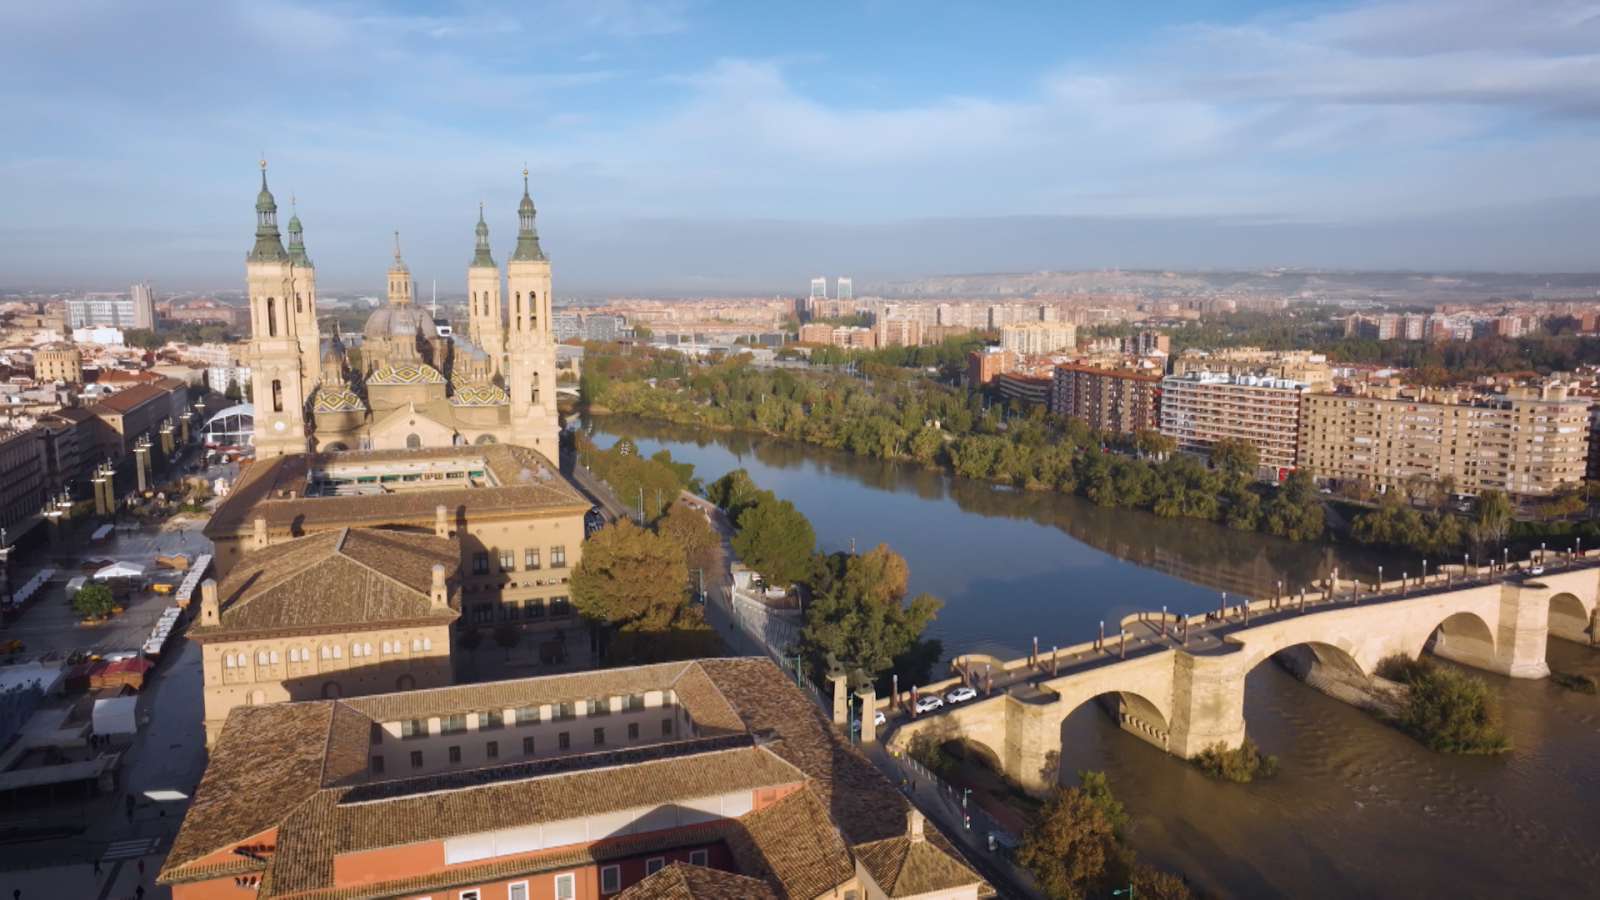 El puerto romano más importante de Hispania estaba en Zaragoza. Sí, has leído bien